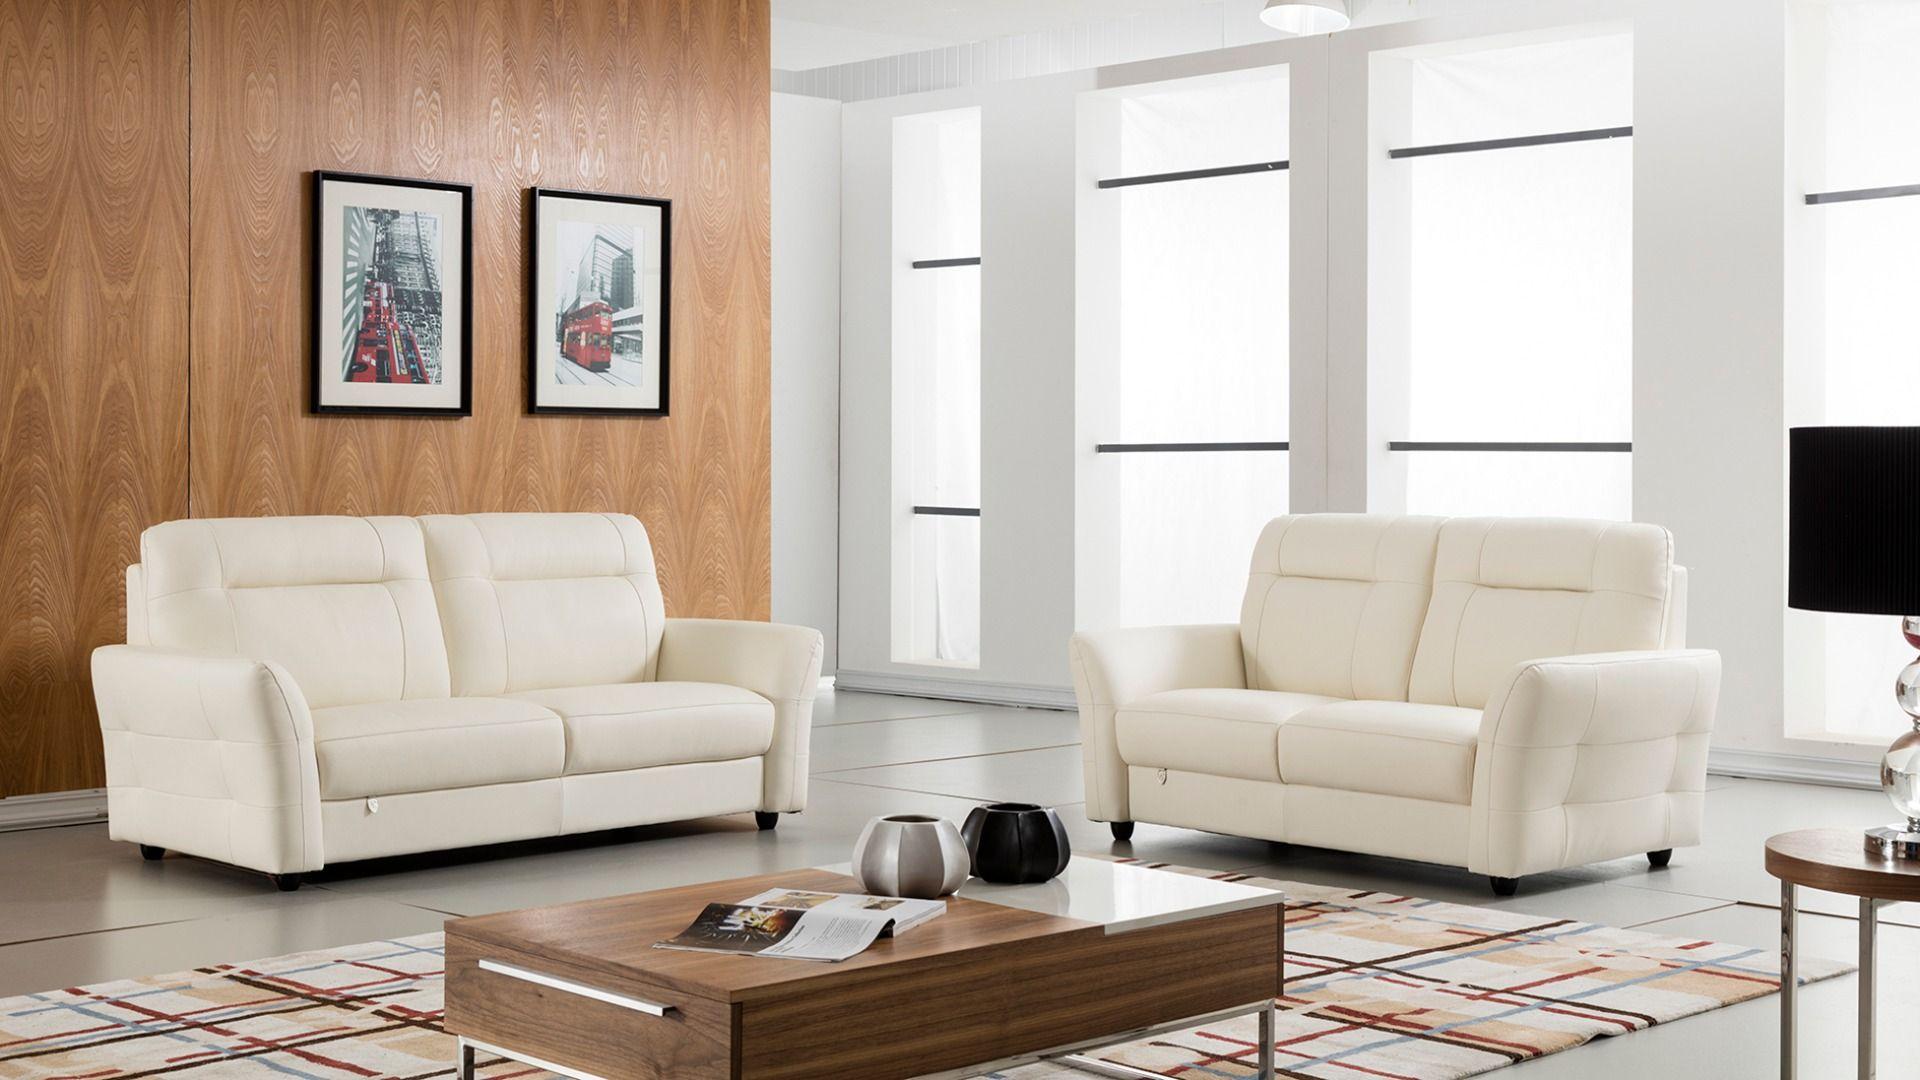 

    
American Eagle Furniture EK090-W Sofa White EK090-W-SF
